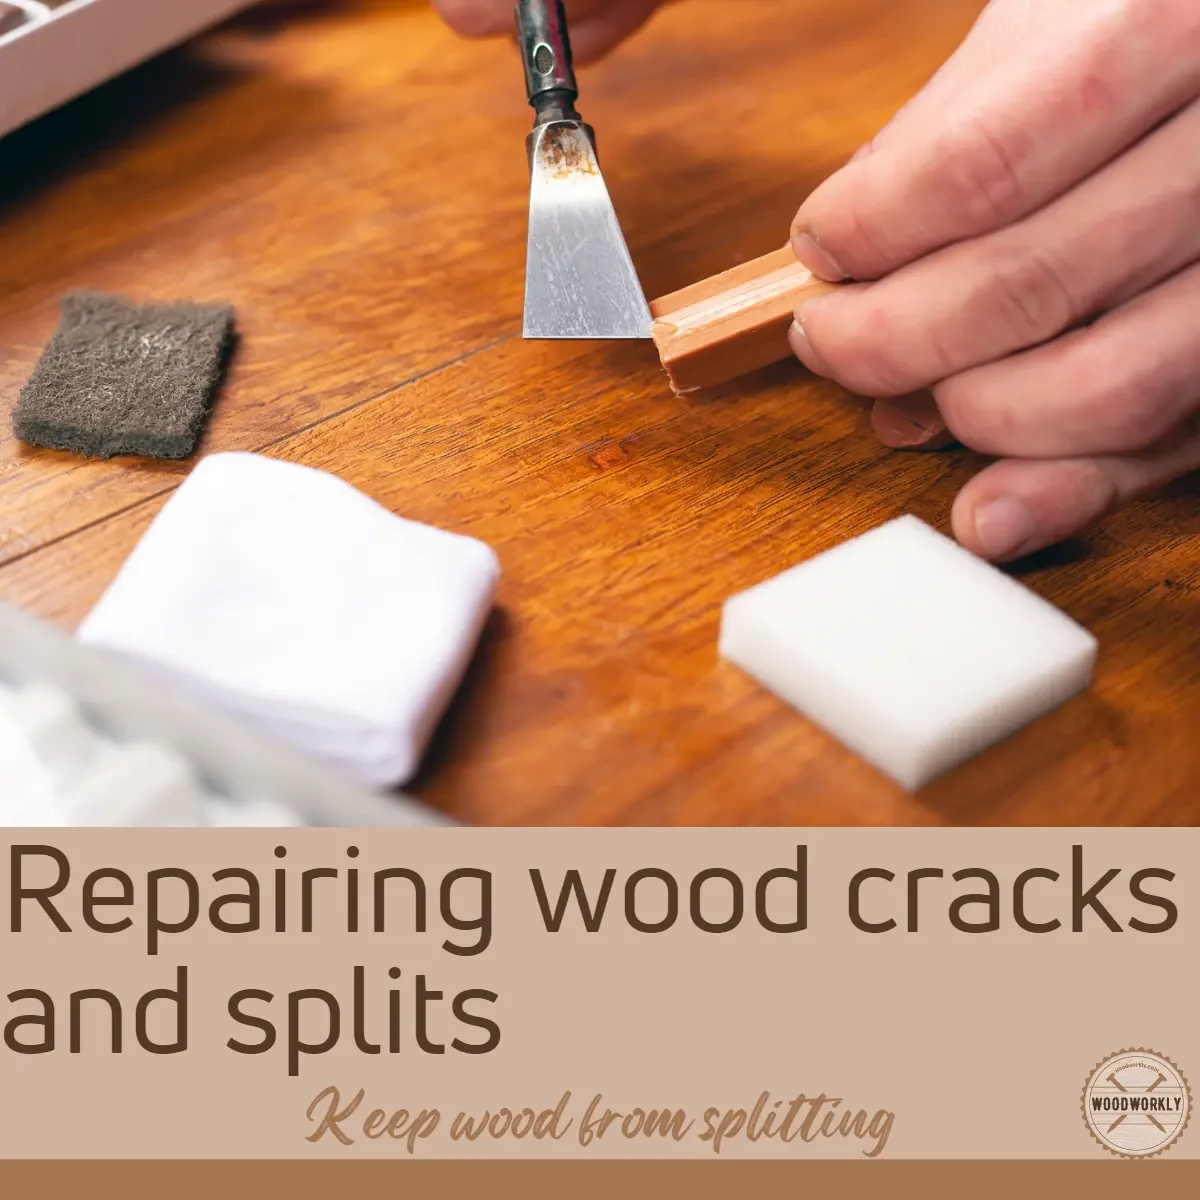 Repairing wood cracks and splits